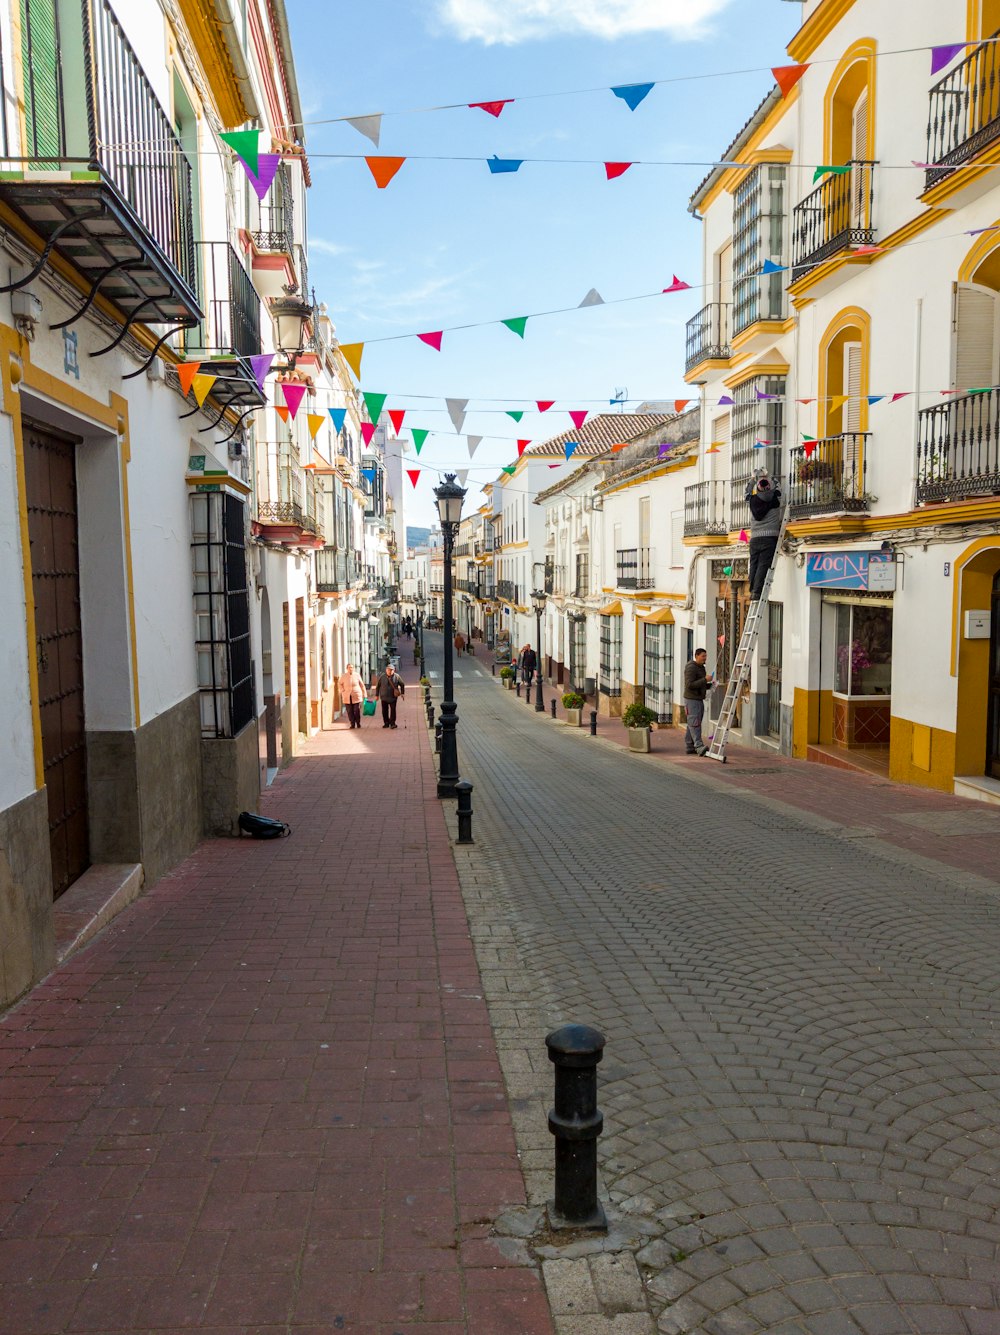 Une rue bordée de bâtiments et de drapeaux colorés